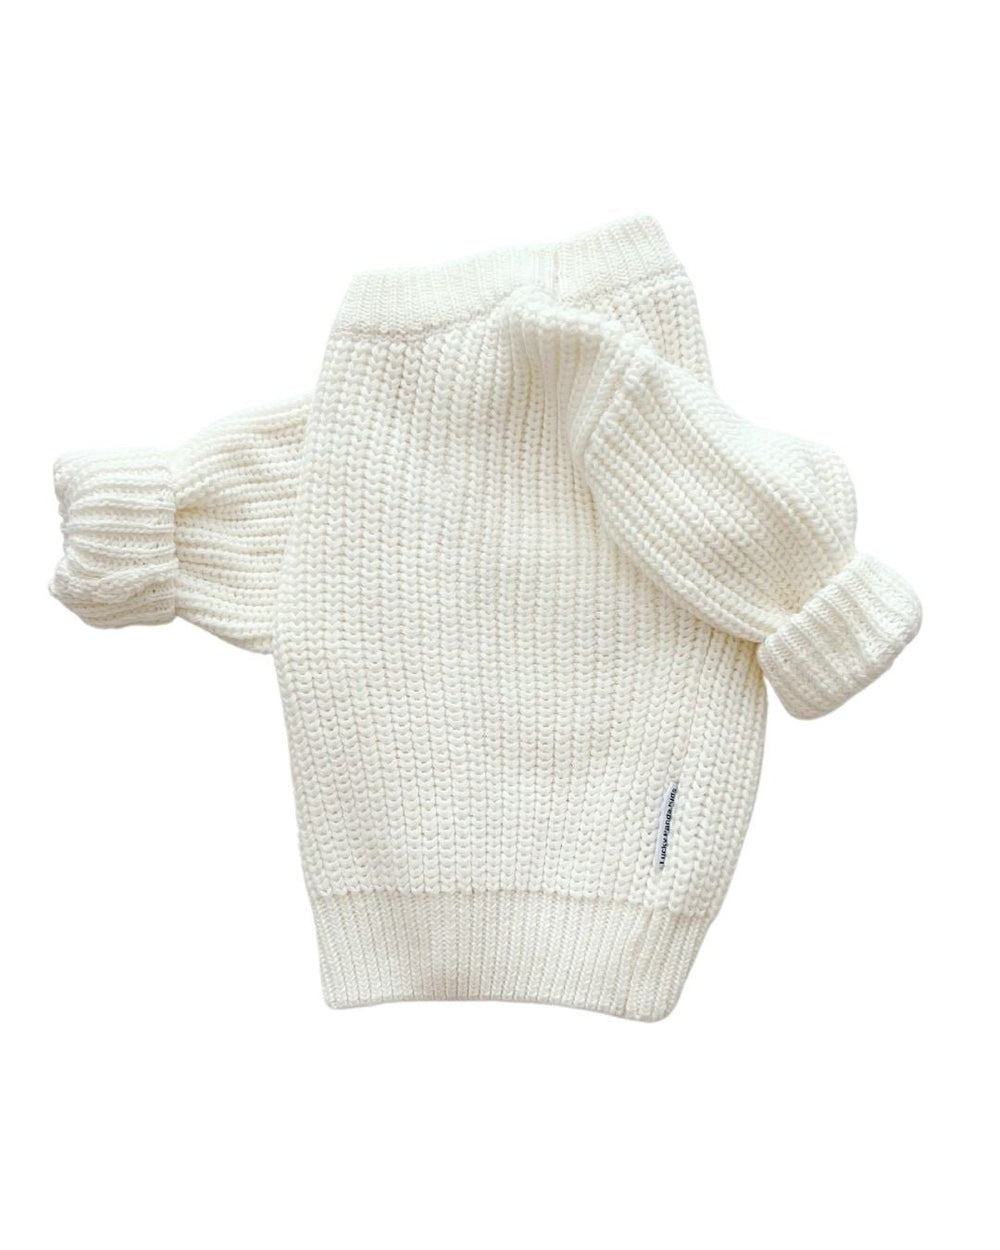 Chunky Knit Sweater | Milk - Sweater - LUCKY PANDA KIDS